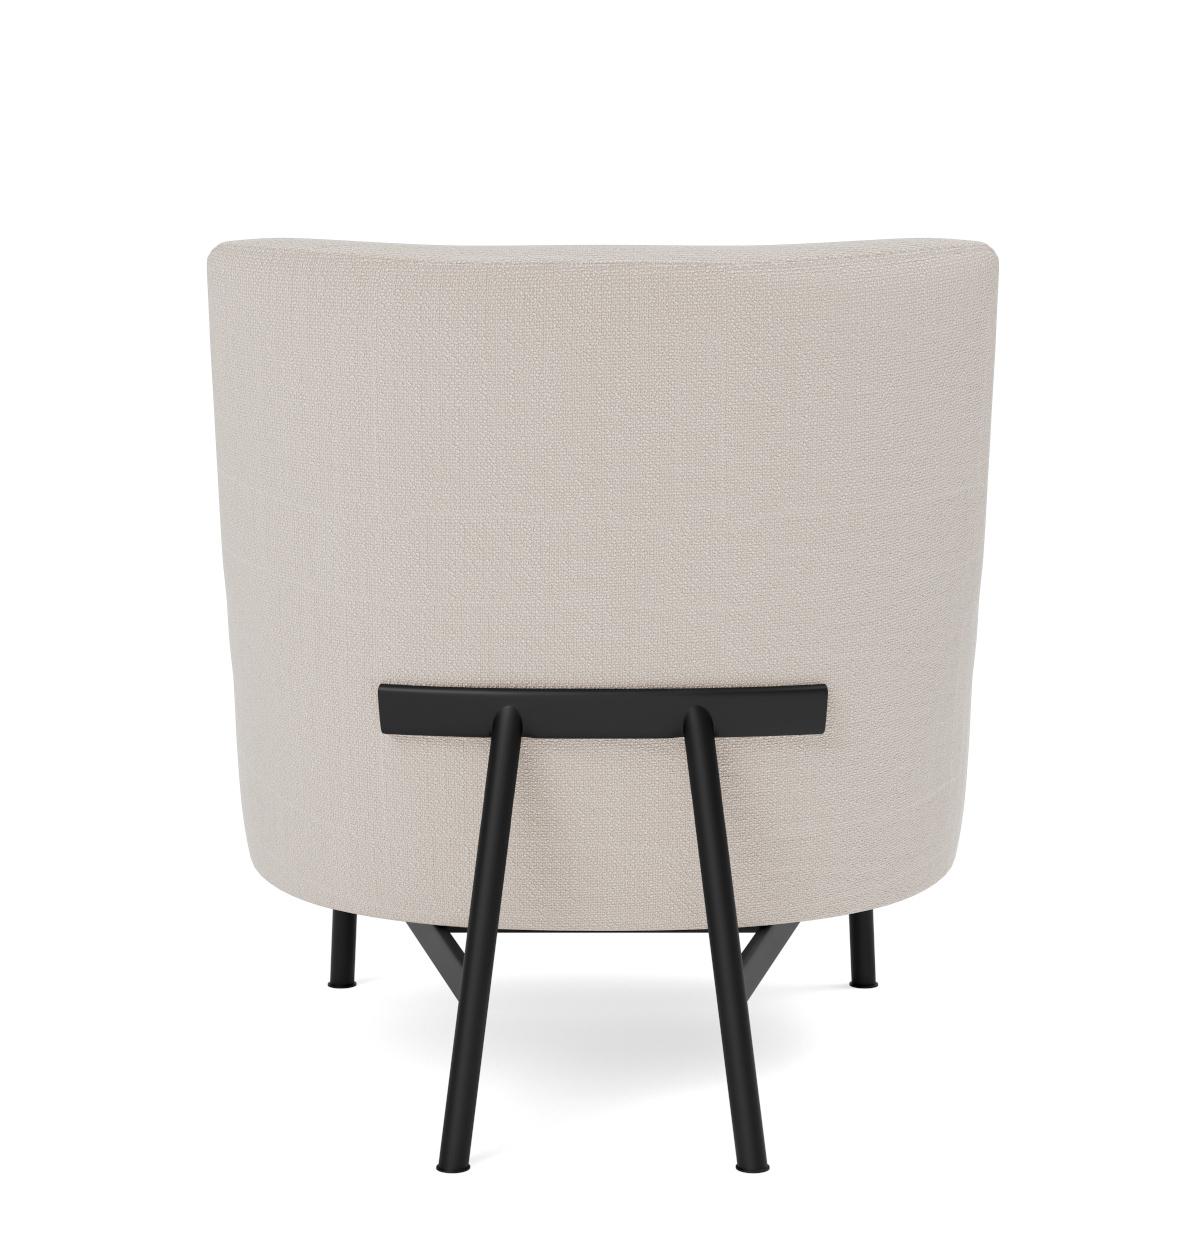 A-Chair Metal Base, schwarz / re-wool 128